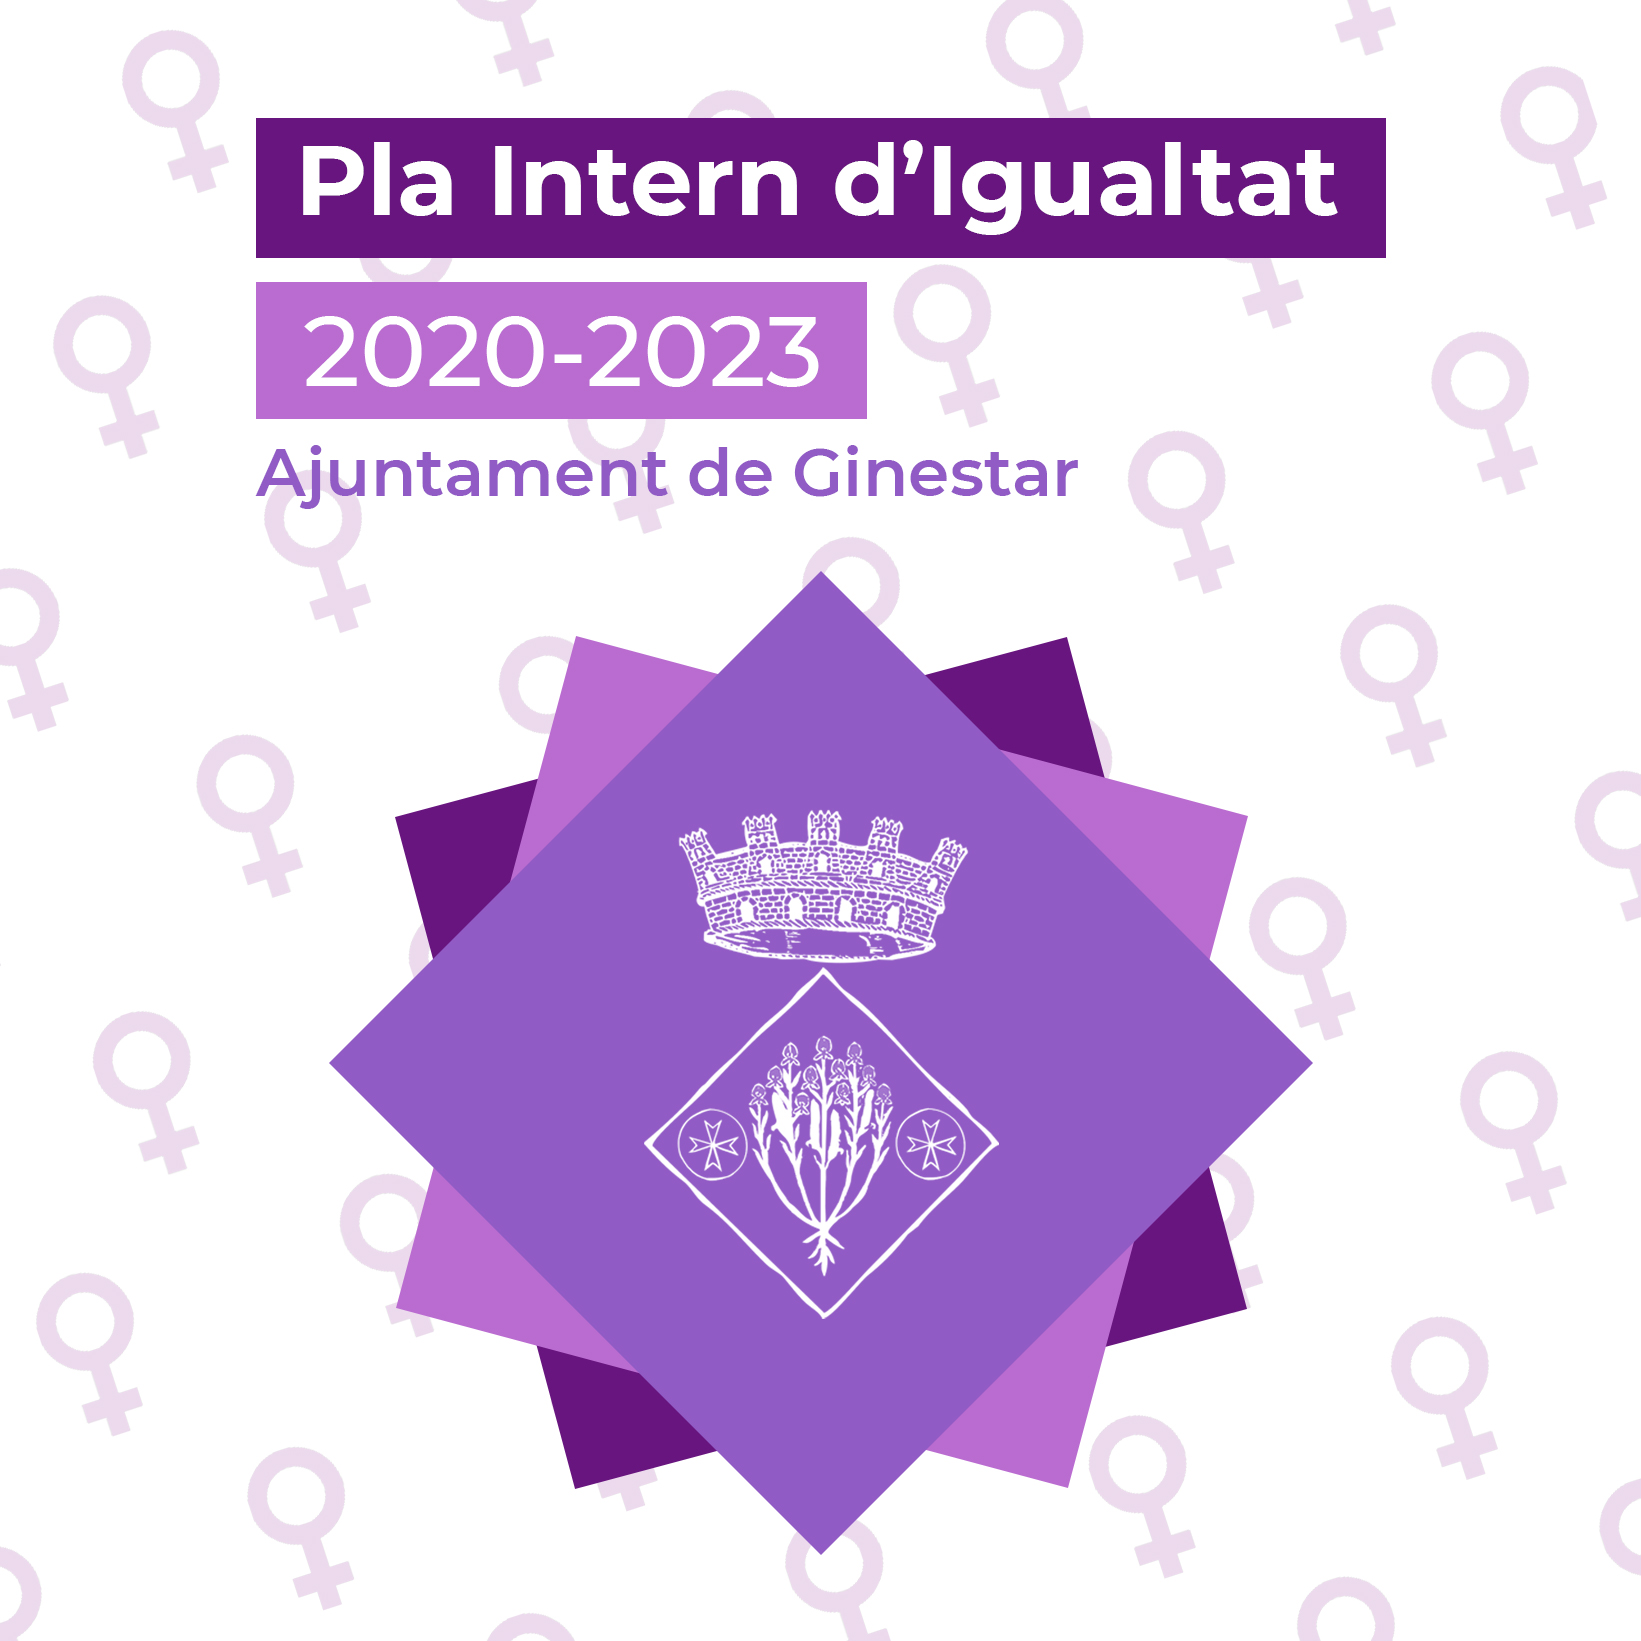 PLA INTERN D’IGUALTAT 2020-2023